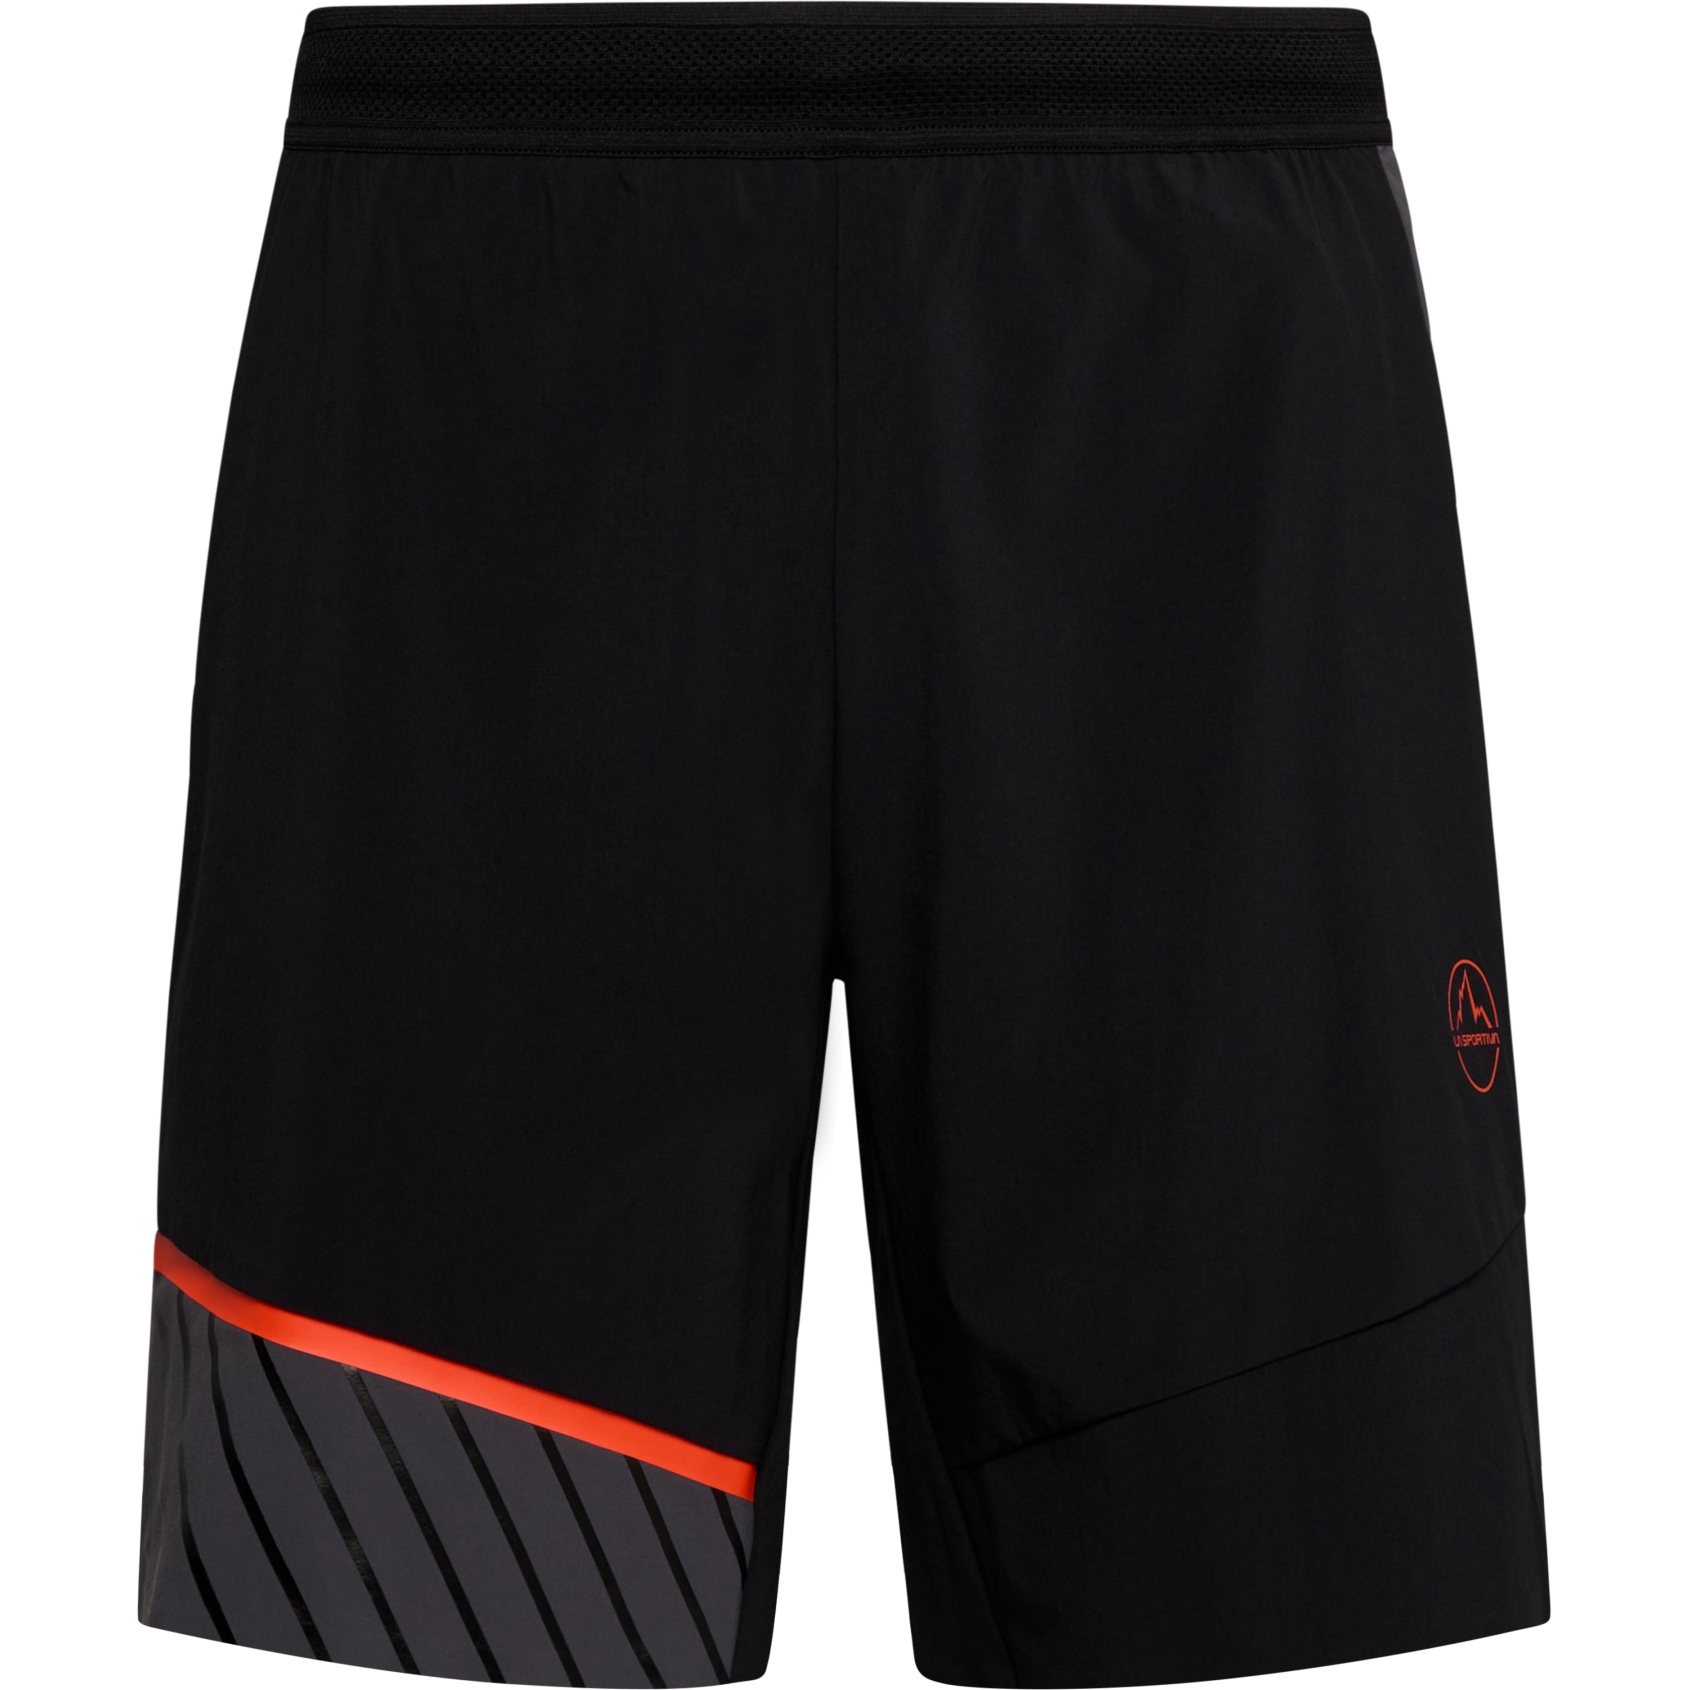 Produktbild von La Sportiva Comp Shorts Herren - Black/Cherry Tomato